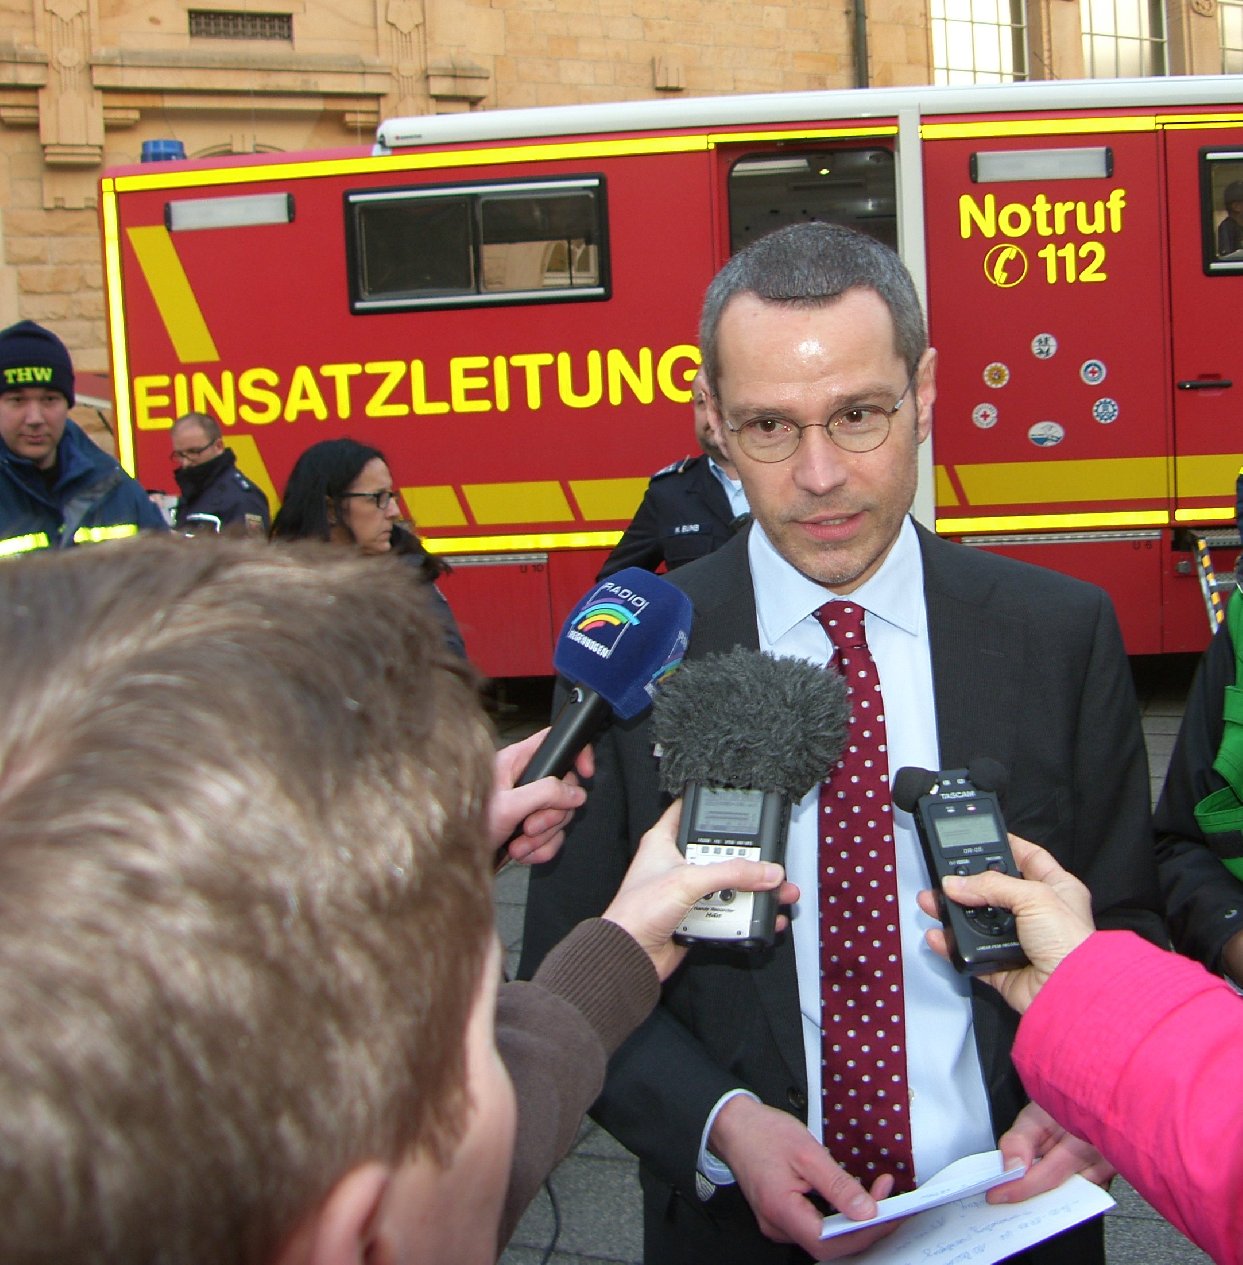 Einsatzleiter Dr. Ingenthron verkündet "Vollzug". Foto: Pfalz-Express/Ahme